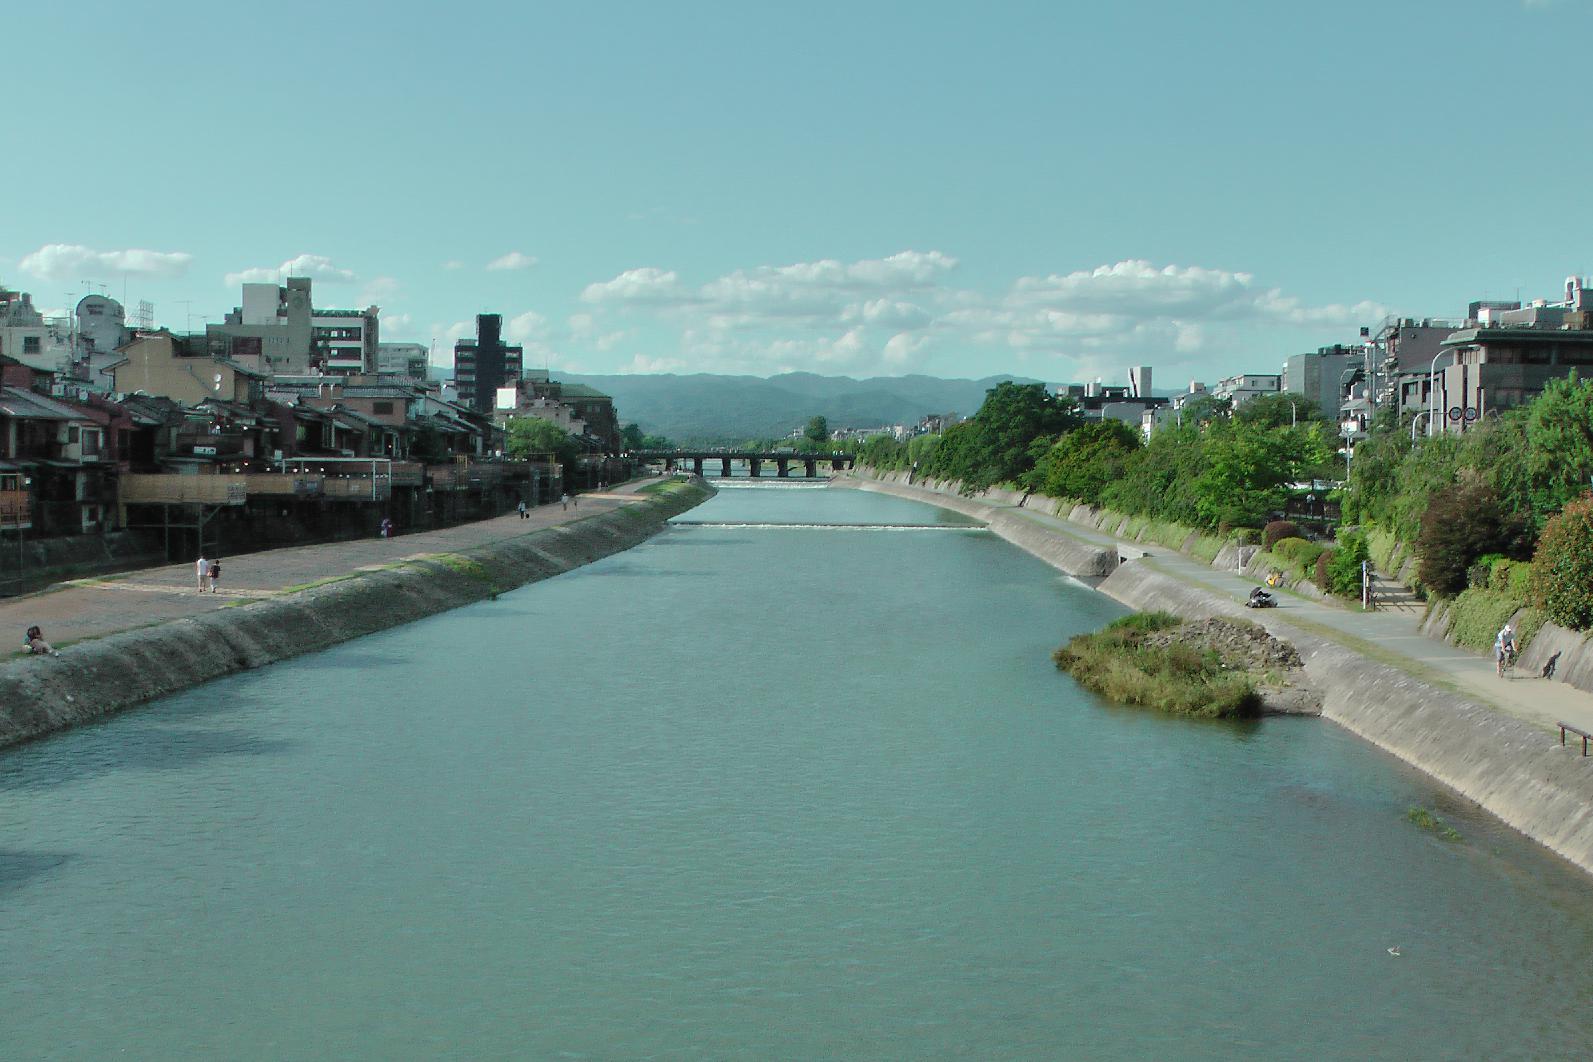 Kamogawa (鴨川) (eng. duck river) in Kyoto